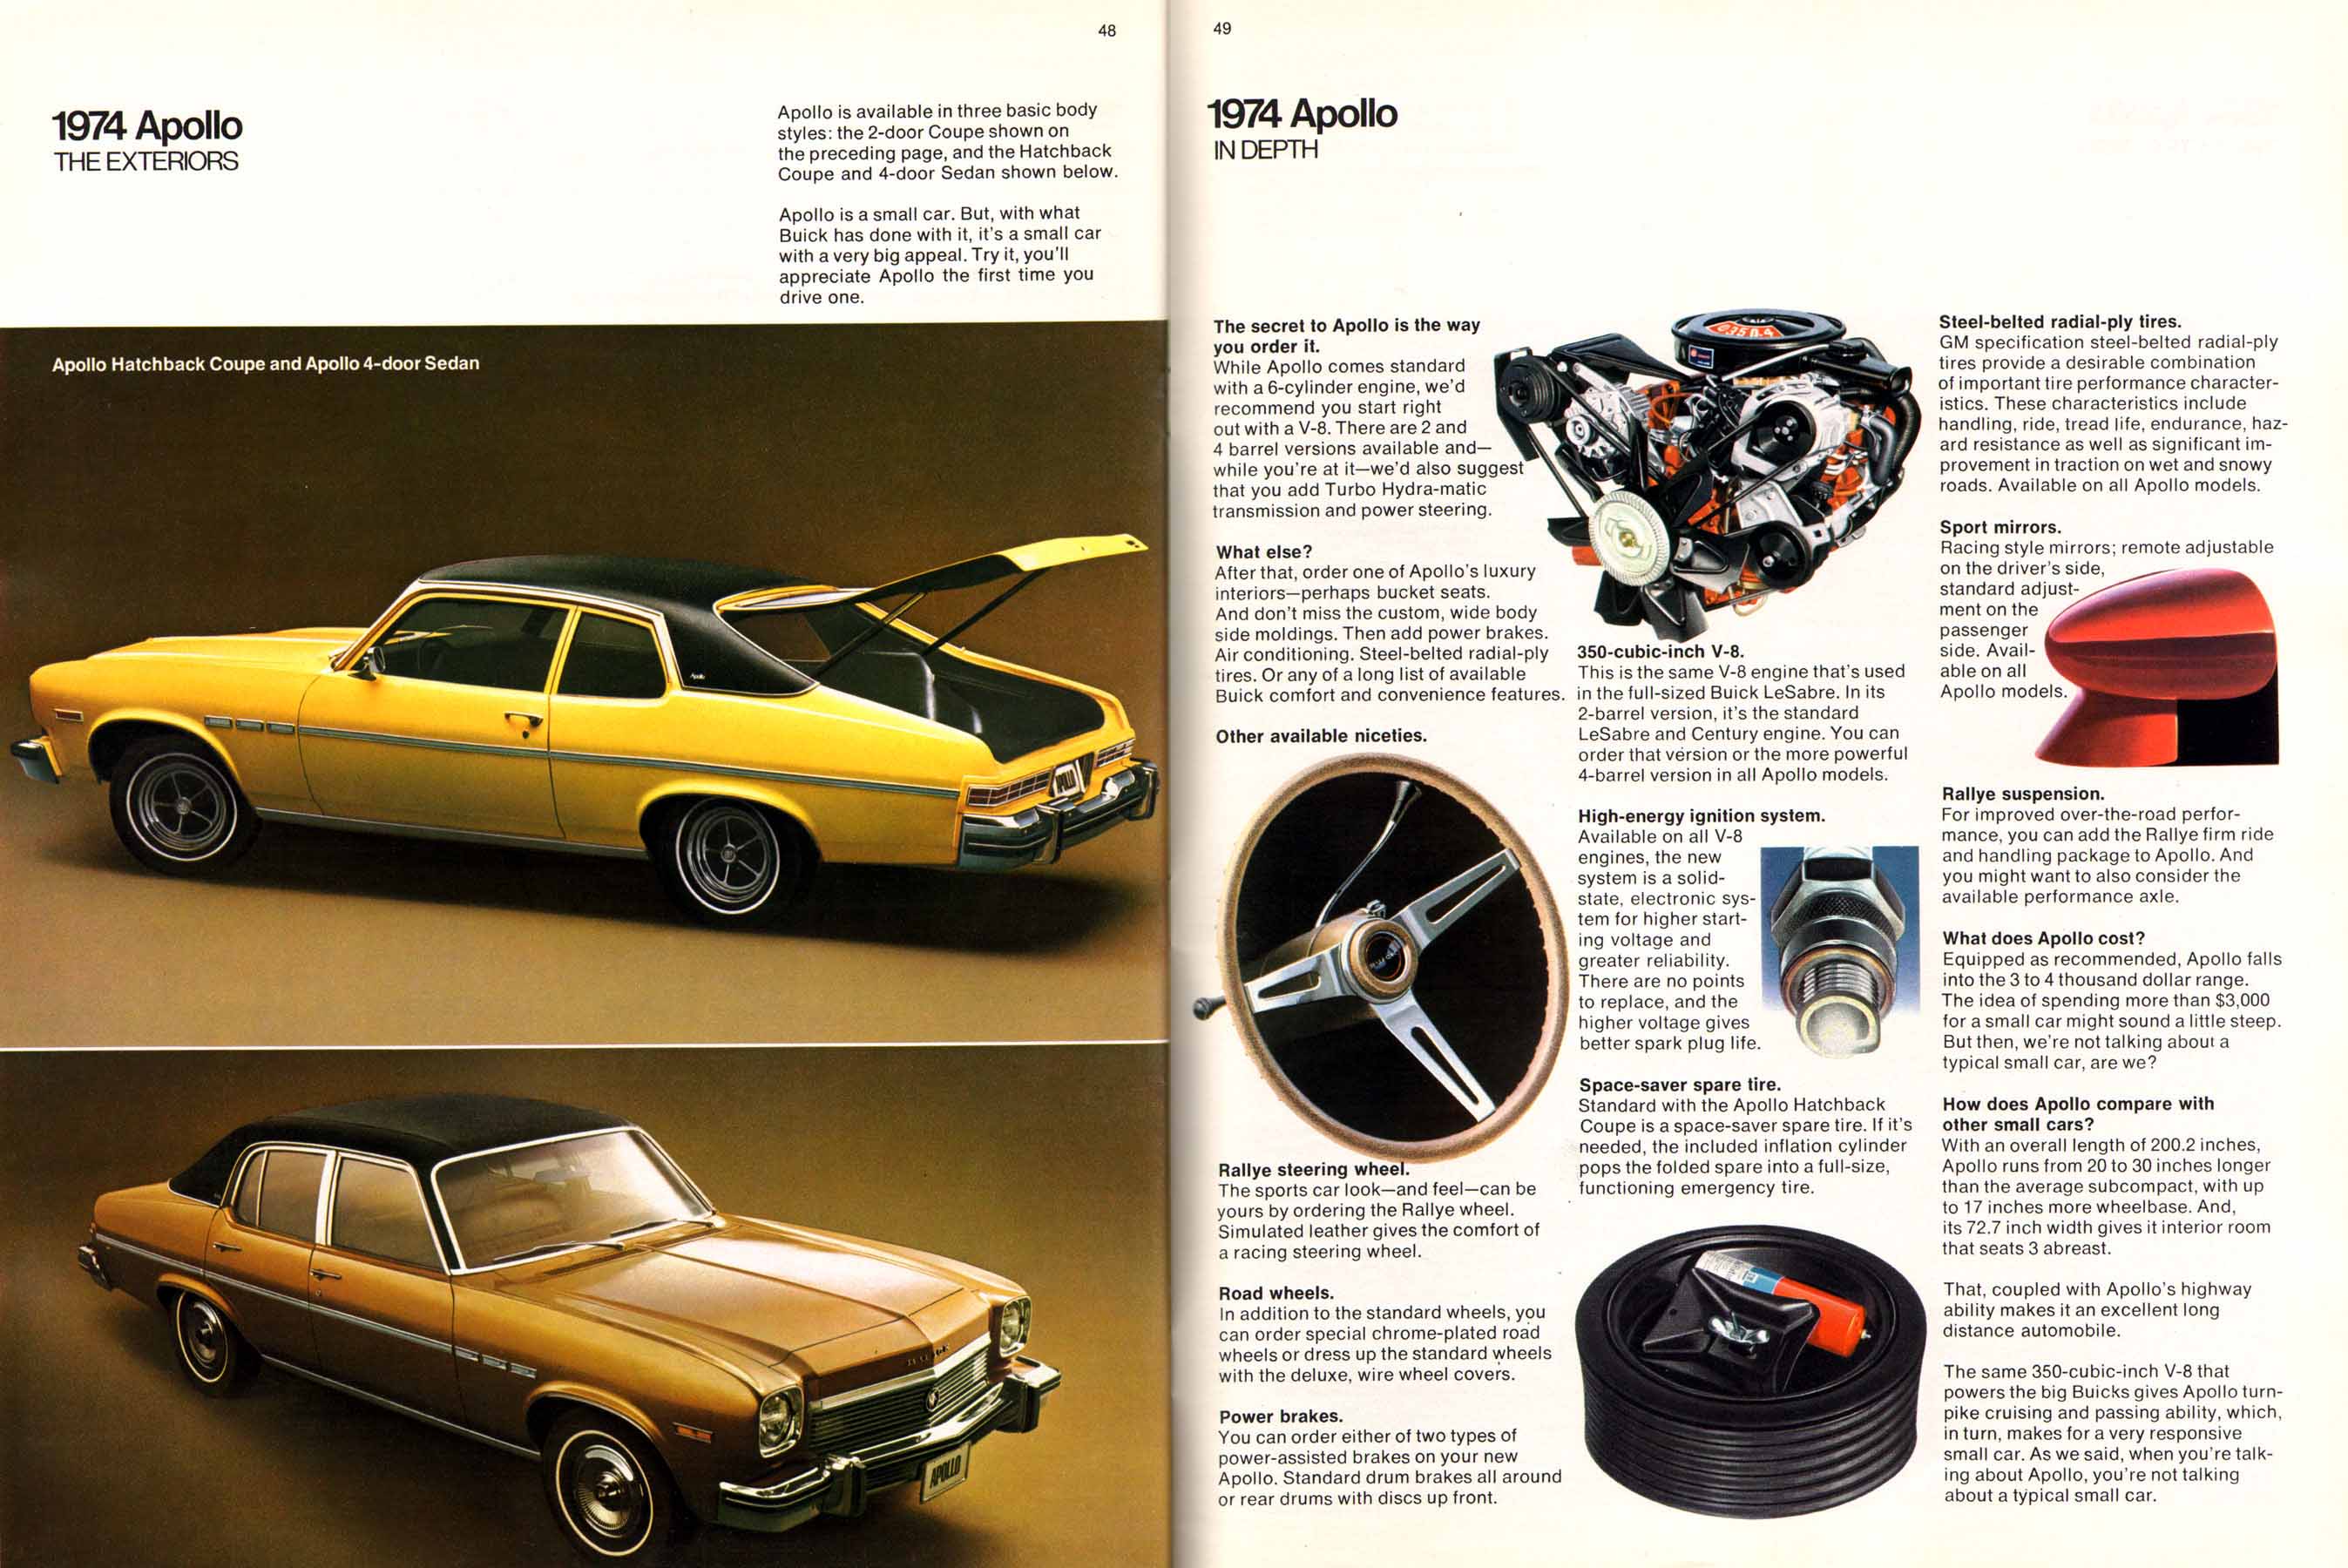 1974 Buick Full Line-48-49